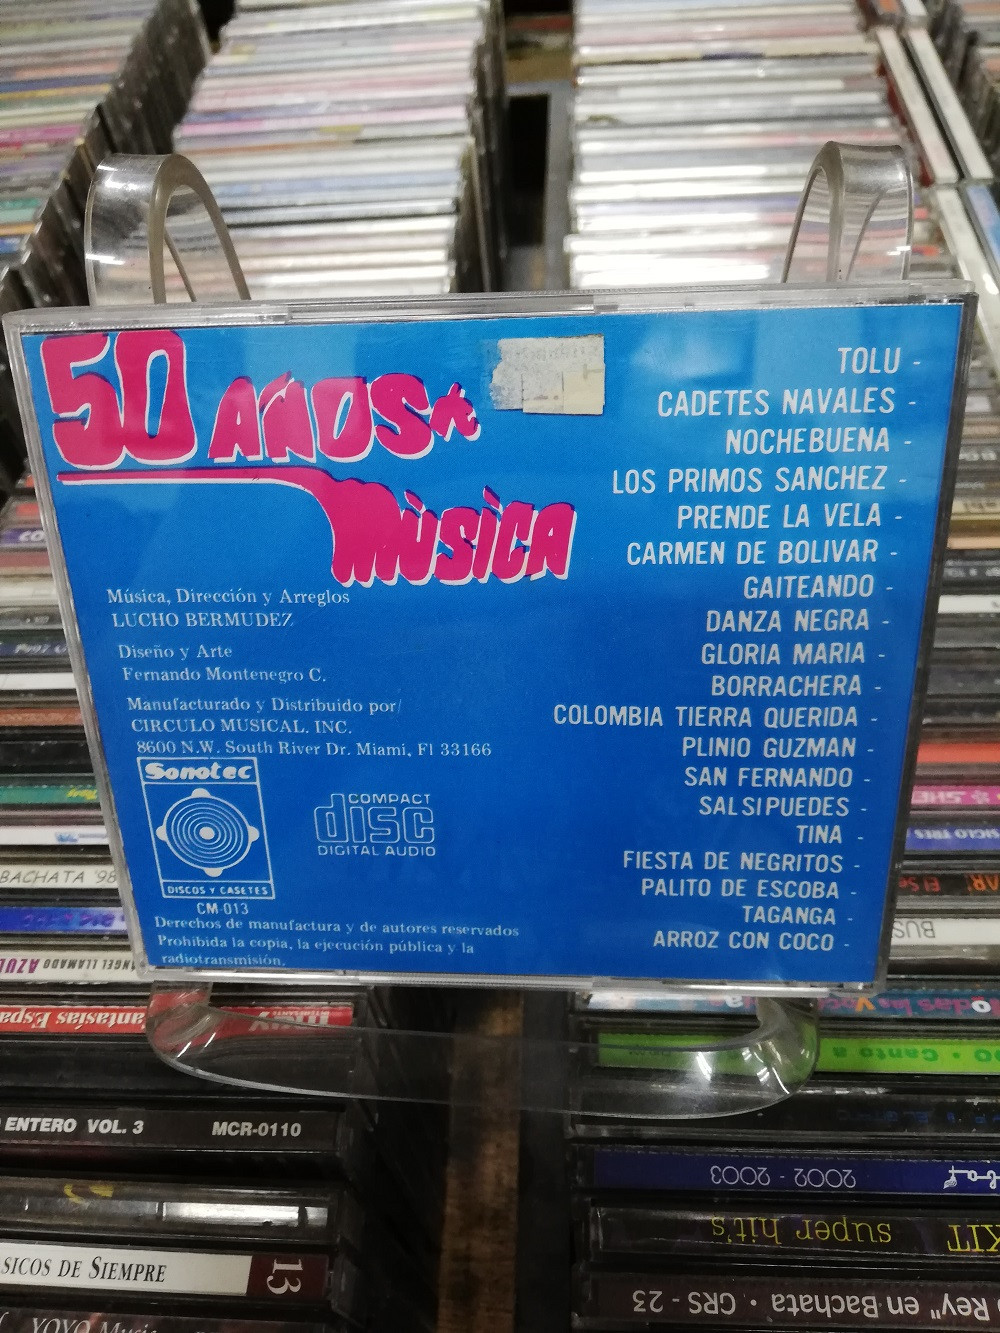 Imagen CD LUCHO BERMUDEZ - 50 AÑOS DE MÚSICA 2